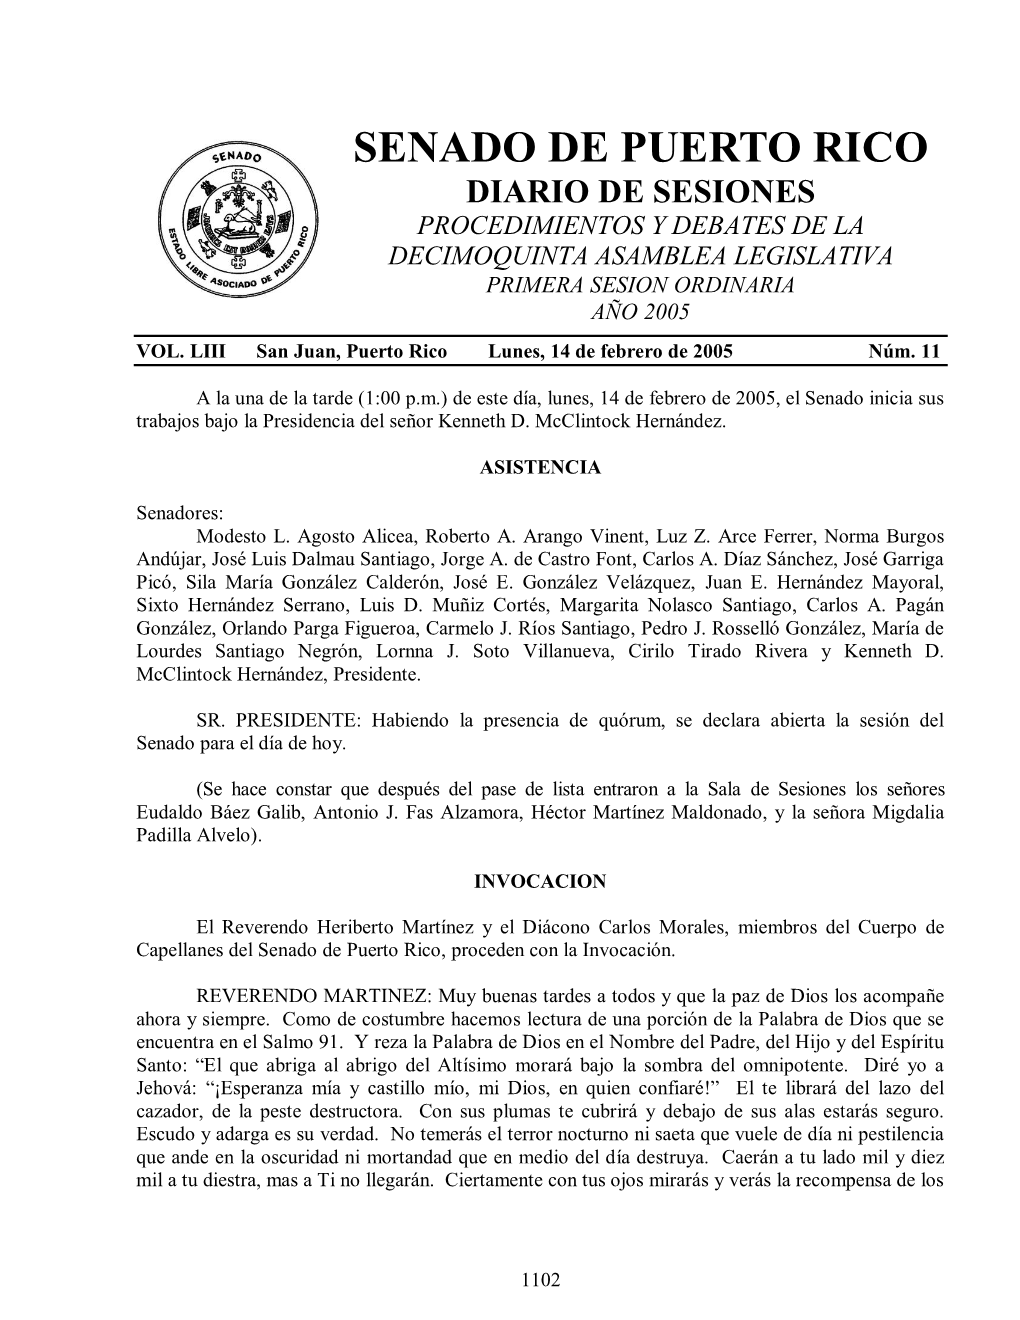 Senado De Puerto Rico Diario De Sesiones Procedimientos Y Debates De La Decimoquinta Asamblea Legislativa Primera Sesion Ordinaria Año 2005 Vol